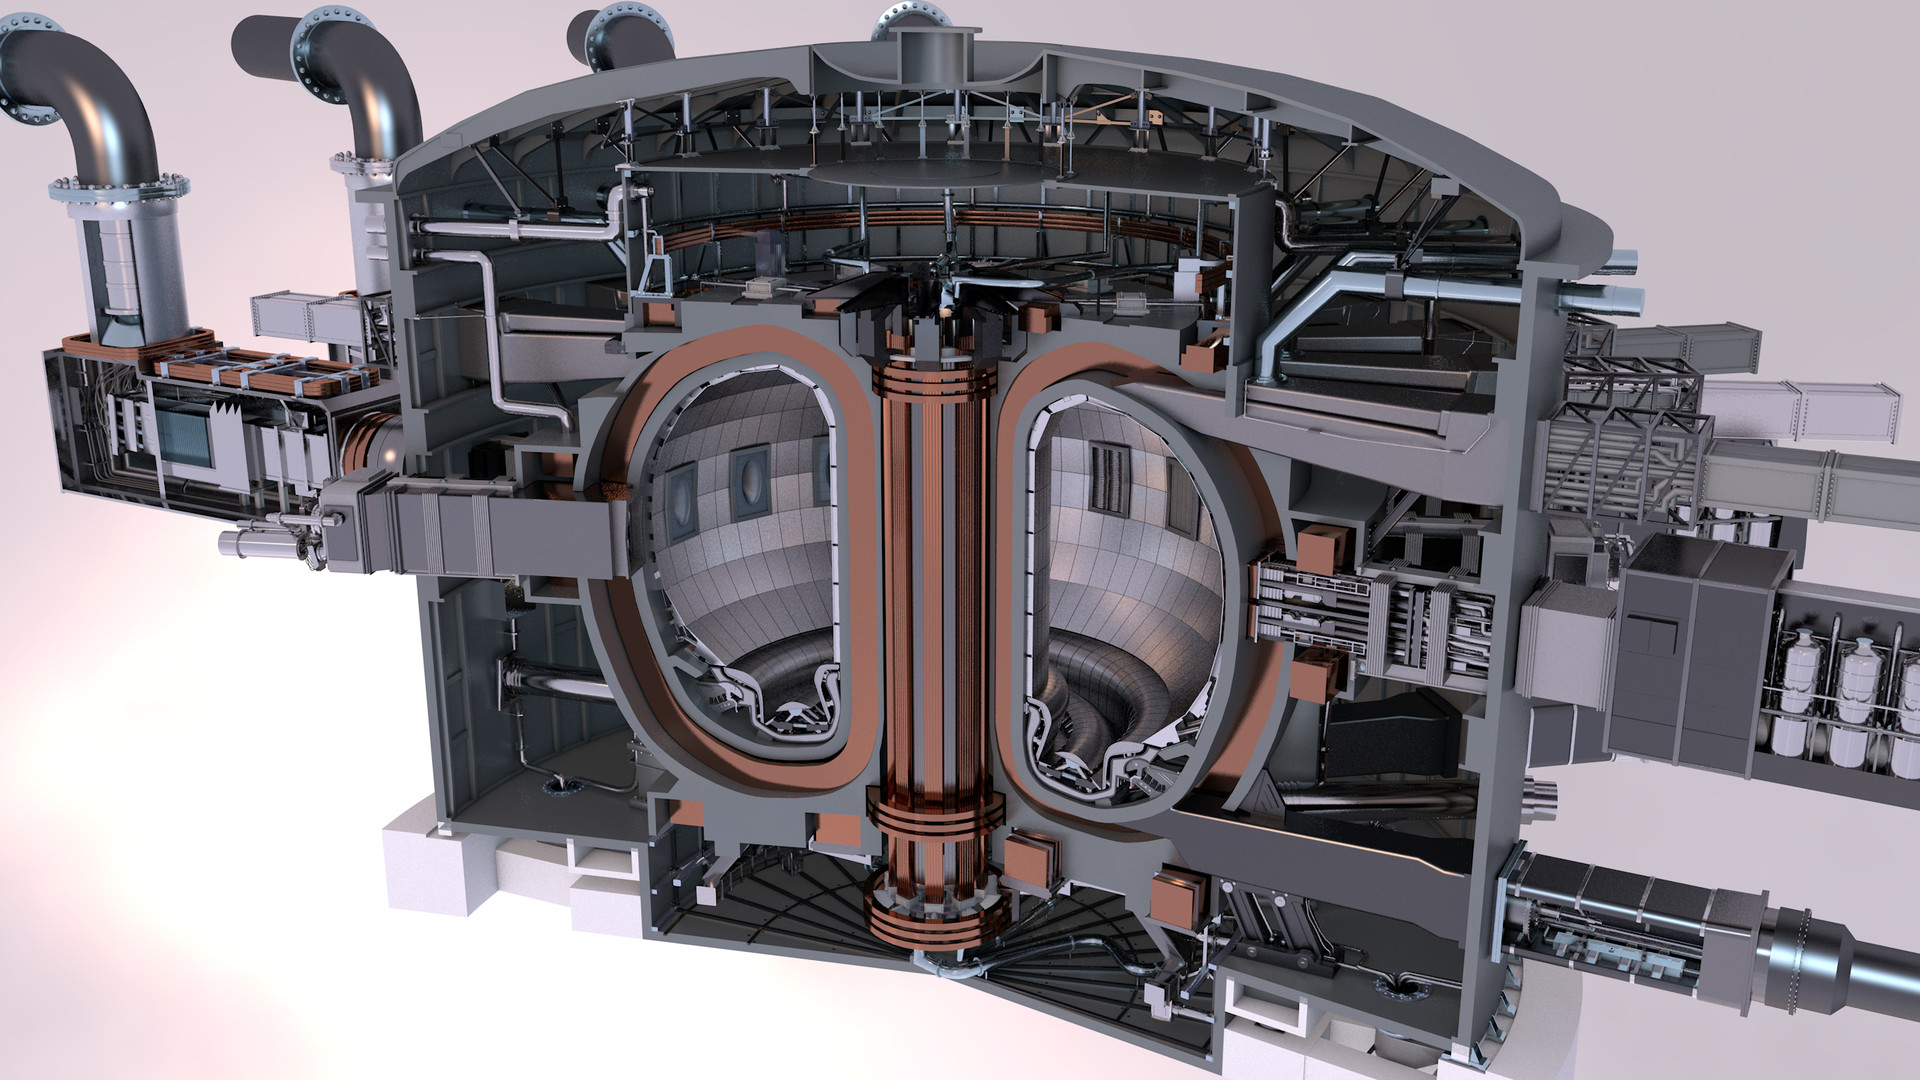 Генератор термоядерного синтеза planet crafter. Токамак ИТЭР. ITER термоядерный реактор. Токамак реактор. Токамак т-3.